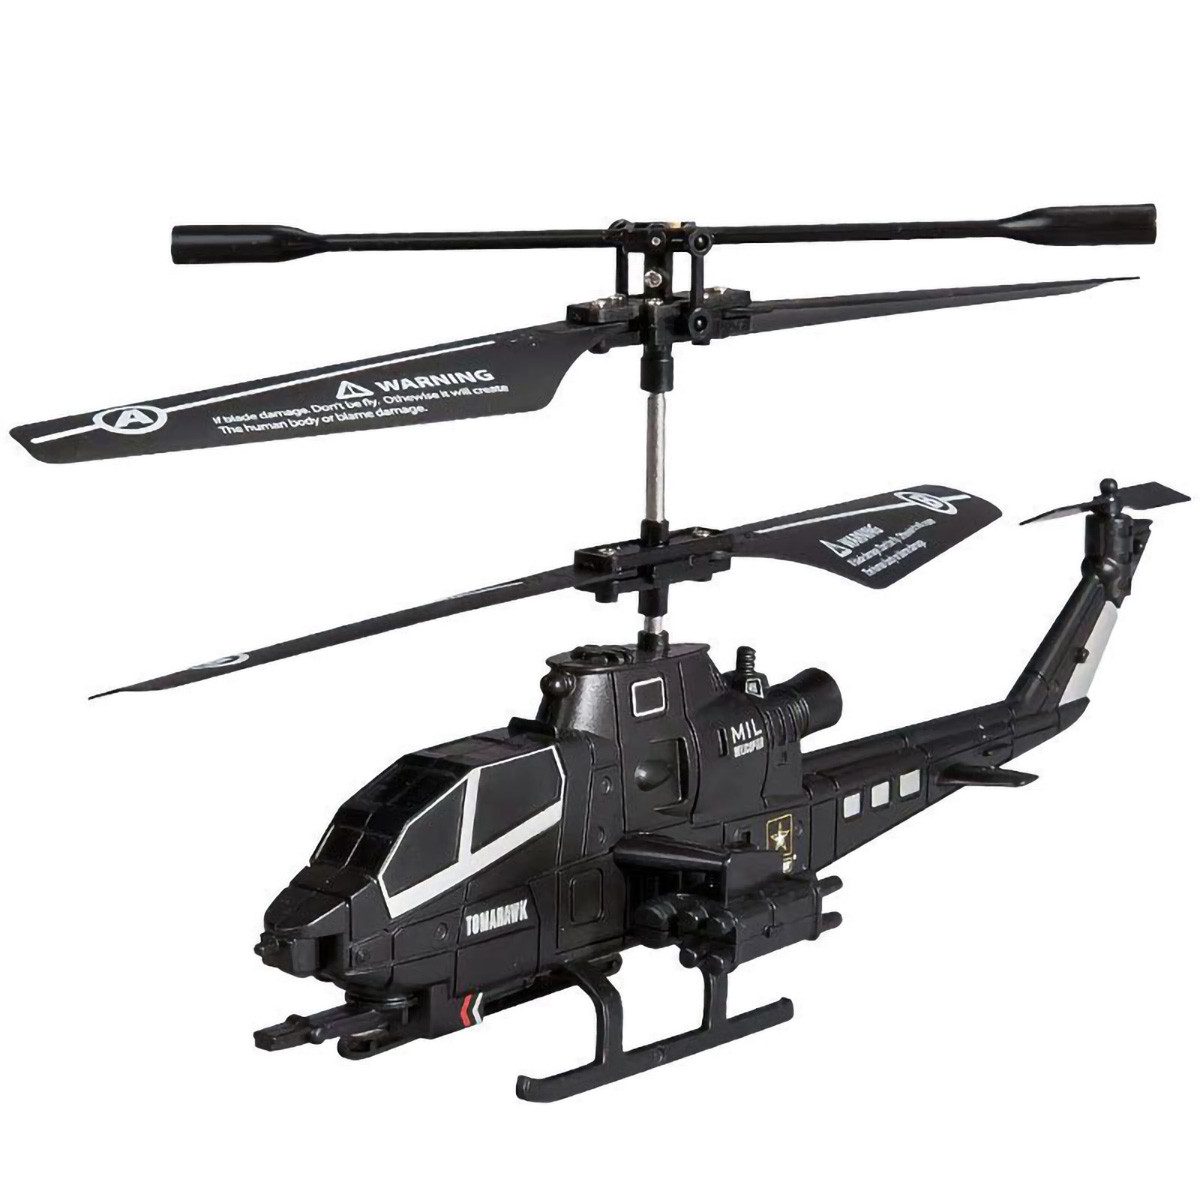 yozhiqu RC-Helikopter Elektrischer RC-Hubschrauber, 2,4GHz kabelloser RC-Drohnenhubschrauber (1-tlg), Mini-RC-Hubschrauber mit LED-Licht, Ein tolles Geschenk für Kinder.